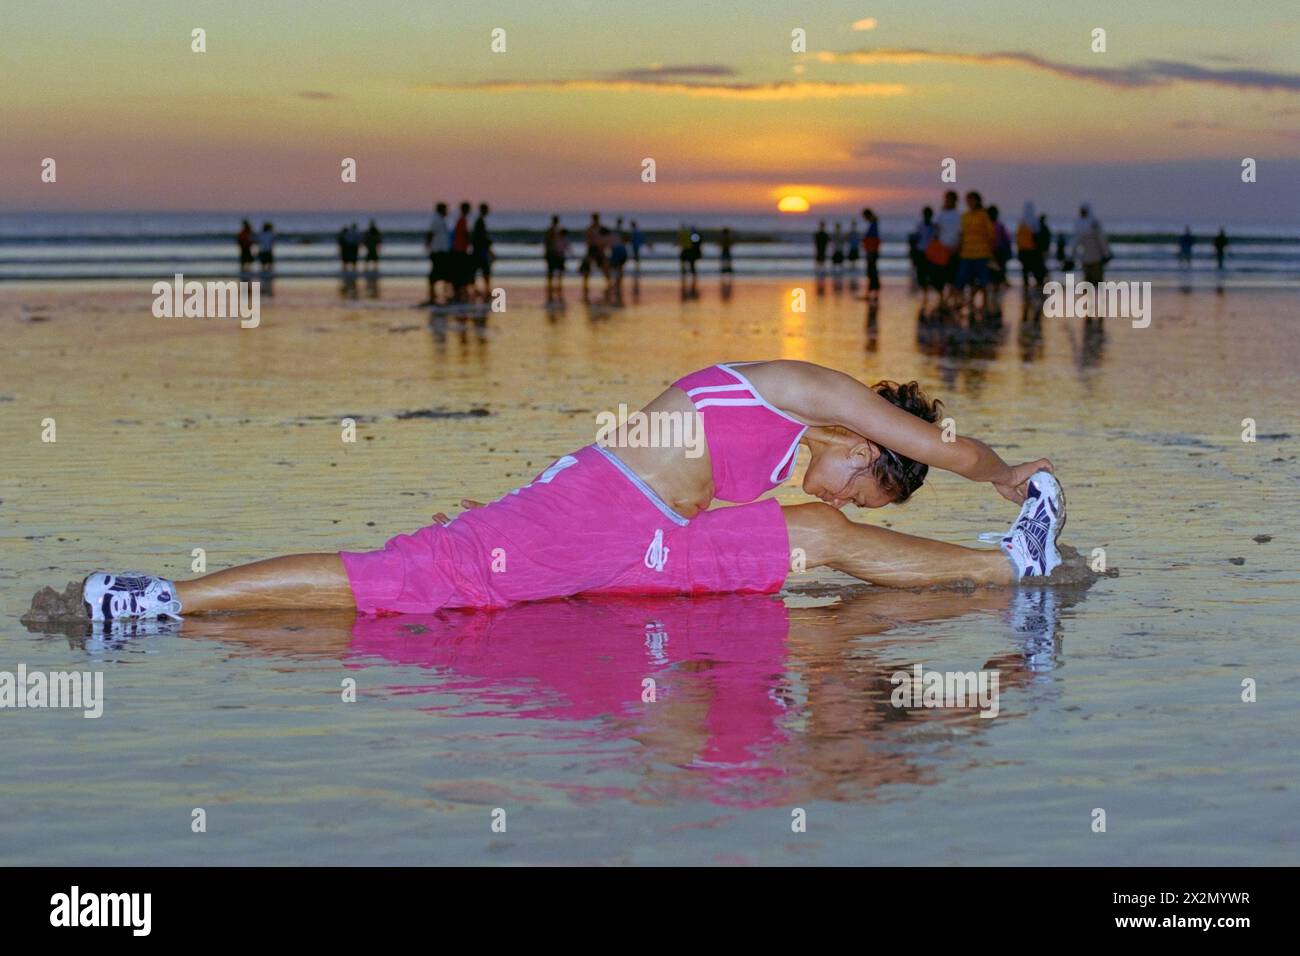 giovane donna indonesiana che indossa un abbigliamento sportivo e segue la sua routine di tenersi in forma su una trafficata spiaggia di kuta al tramonto bali indonesia 2004 Foto Stock